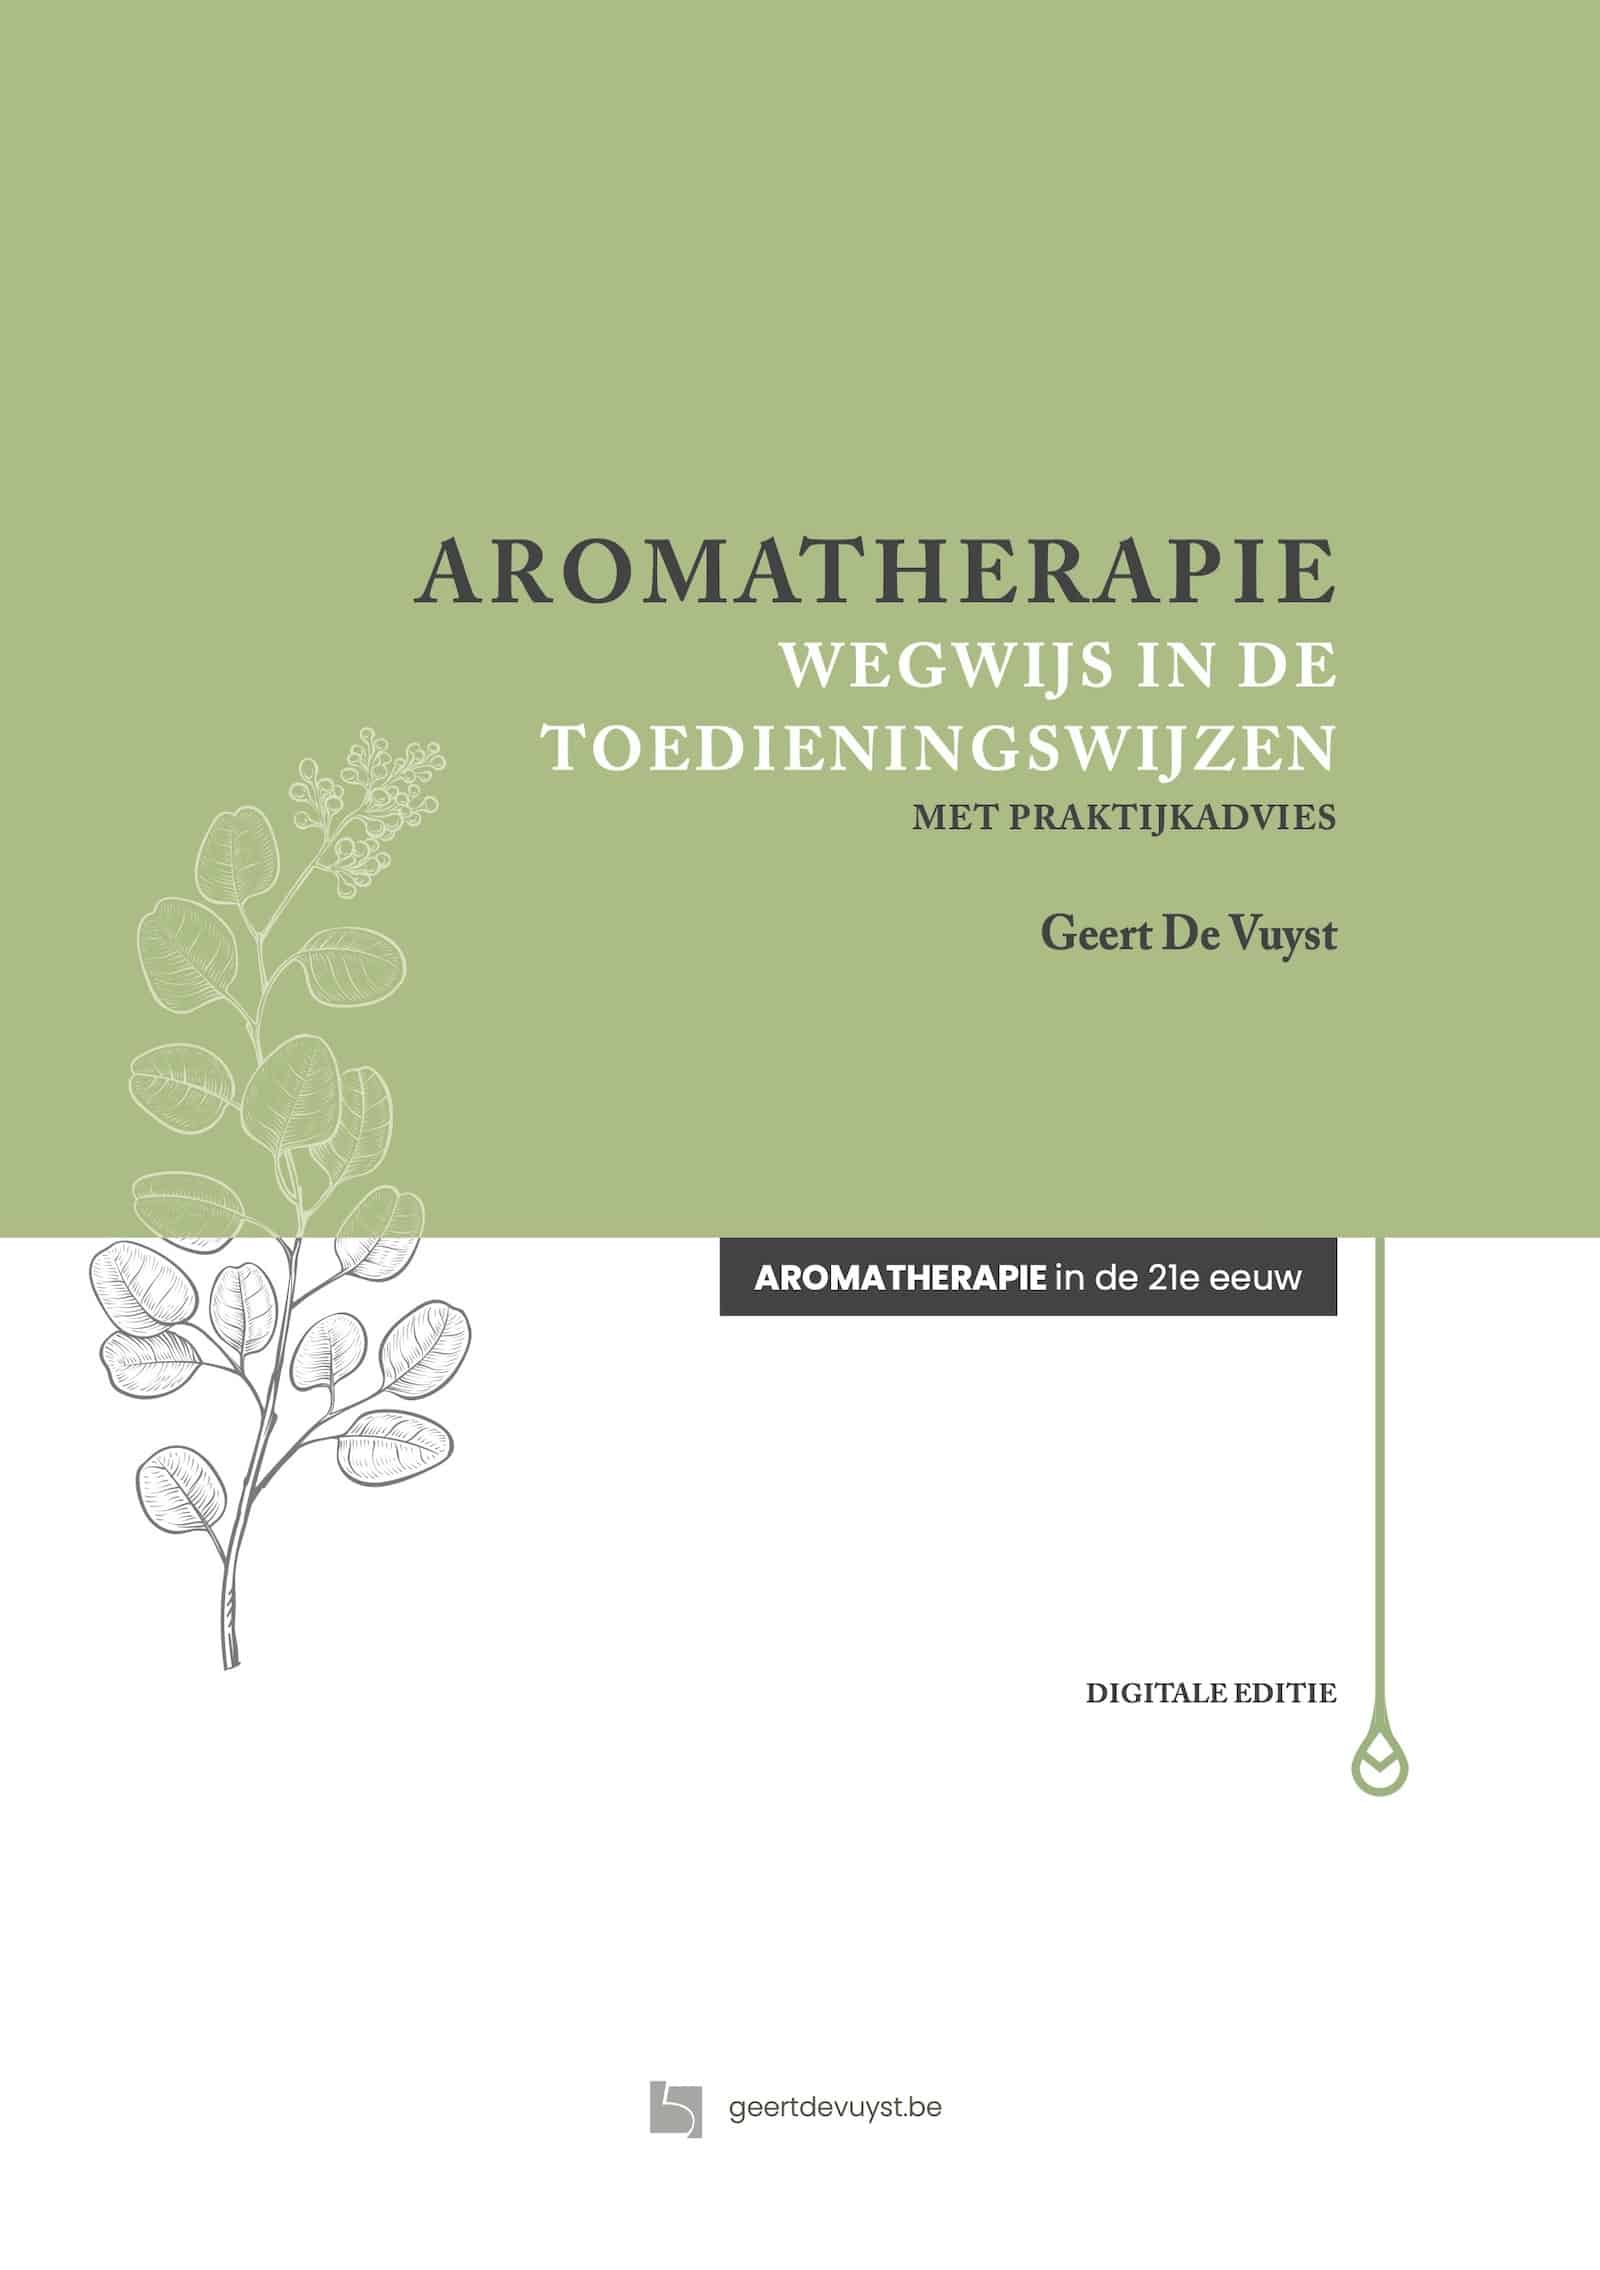 Aromatherapie – Wegwijs in de toedieningswijzen